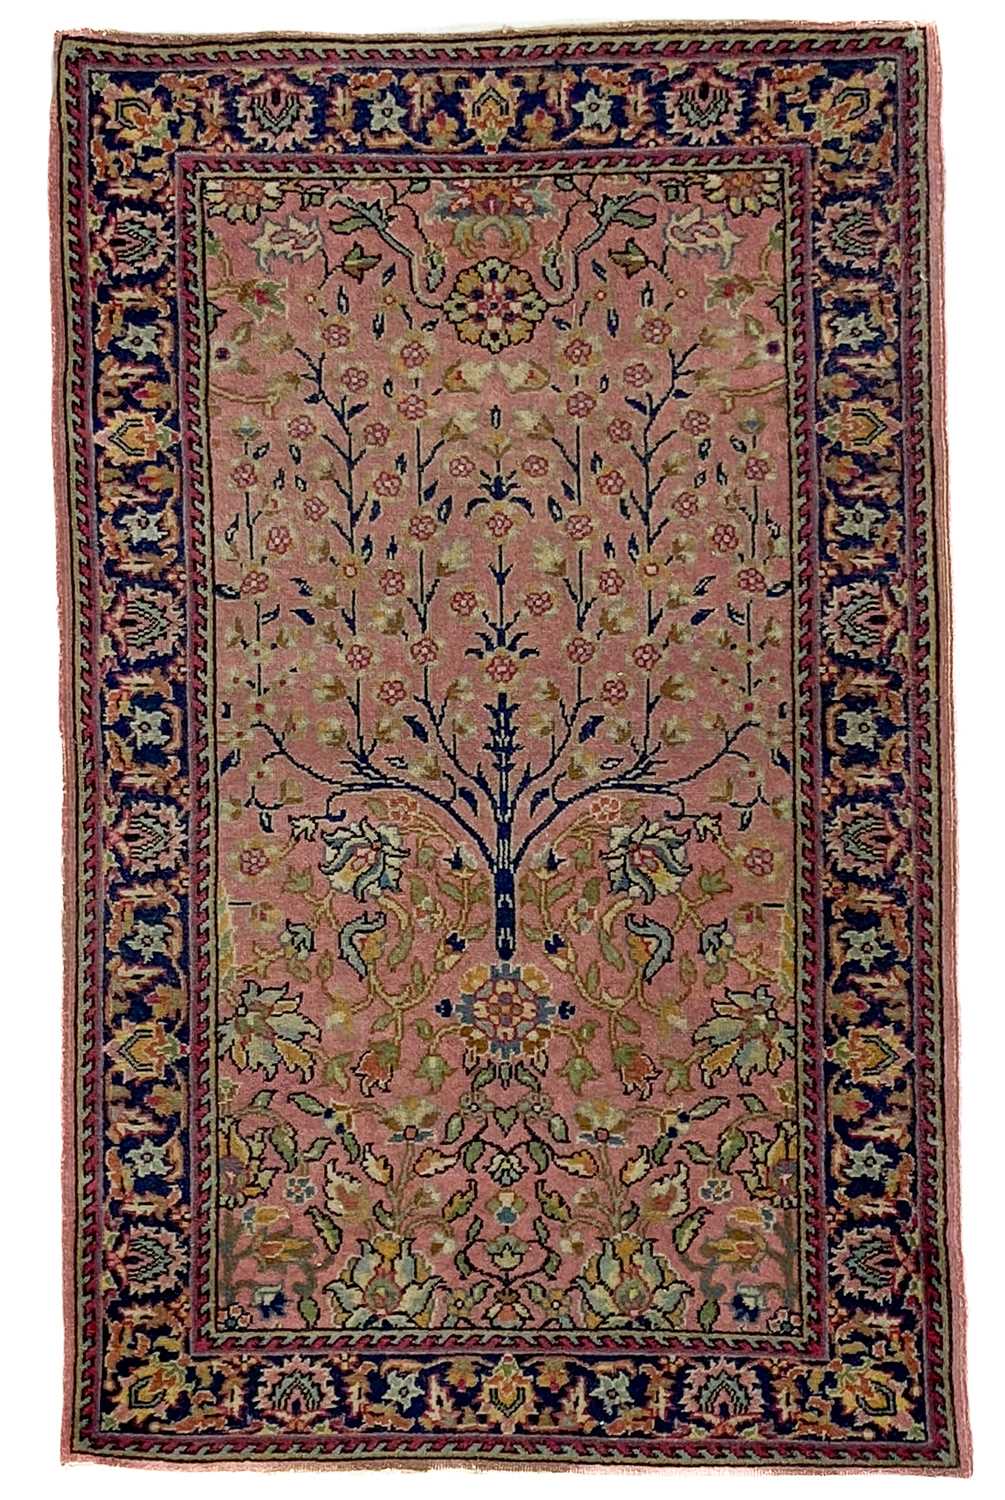 An Isparta rug, circa 1930's.